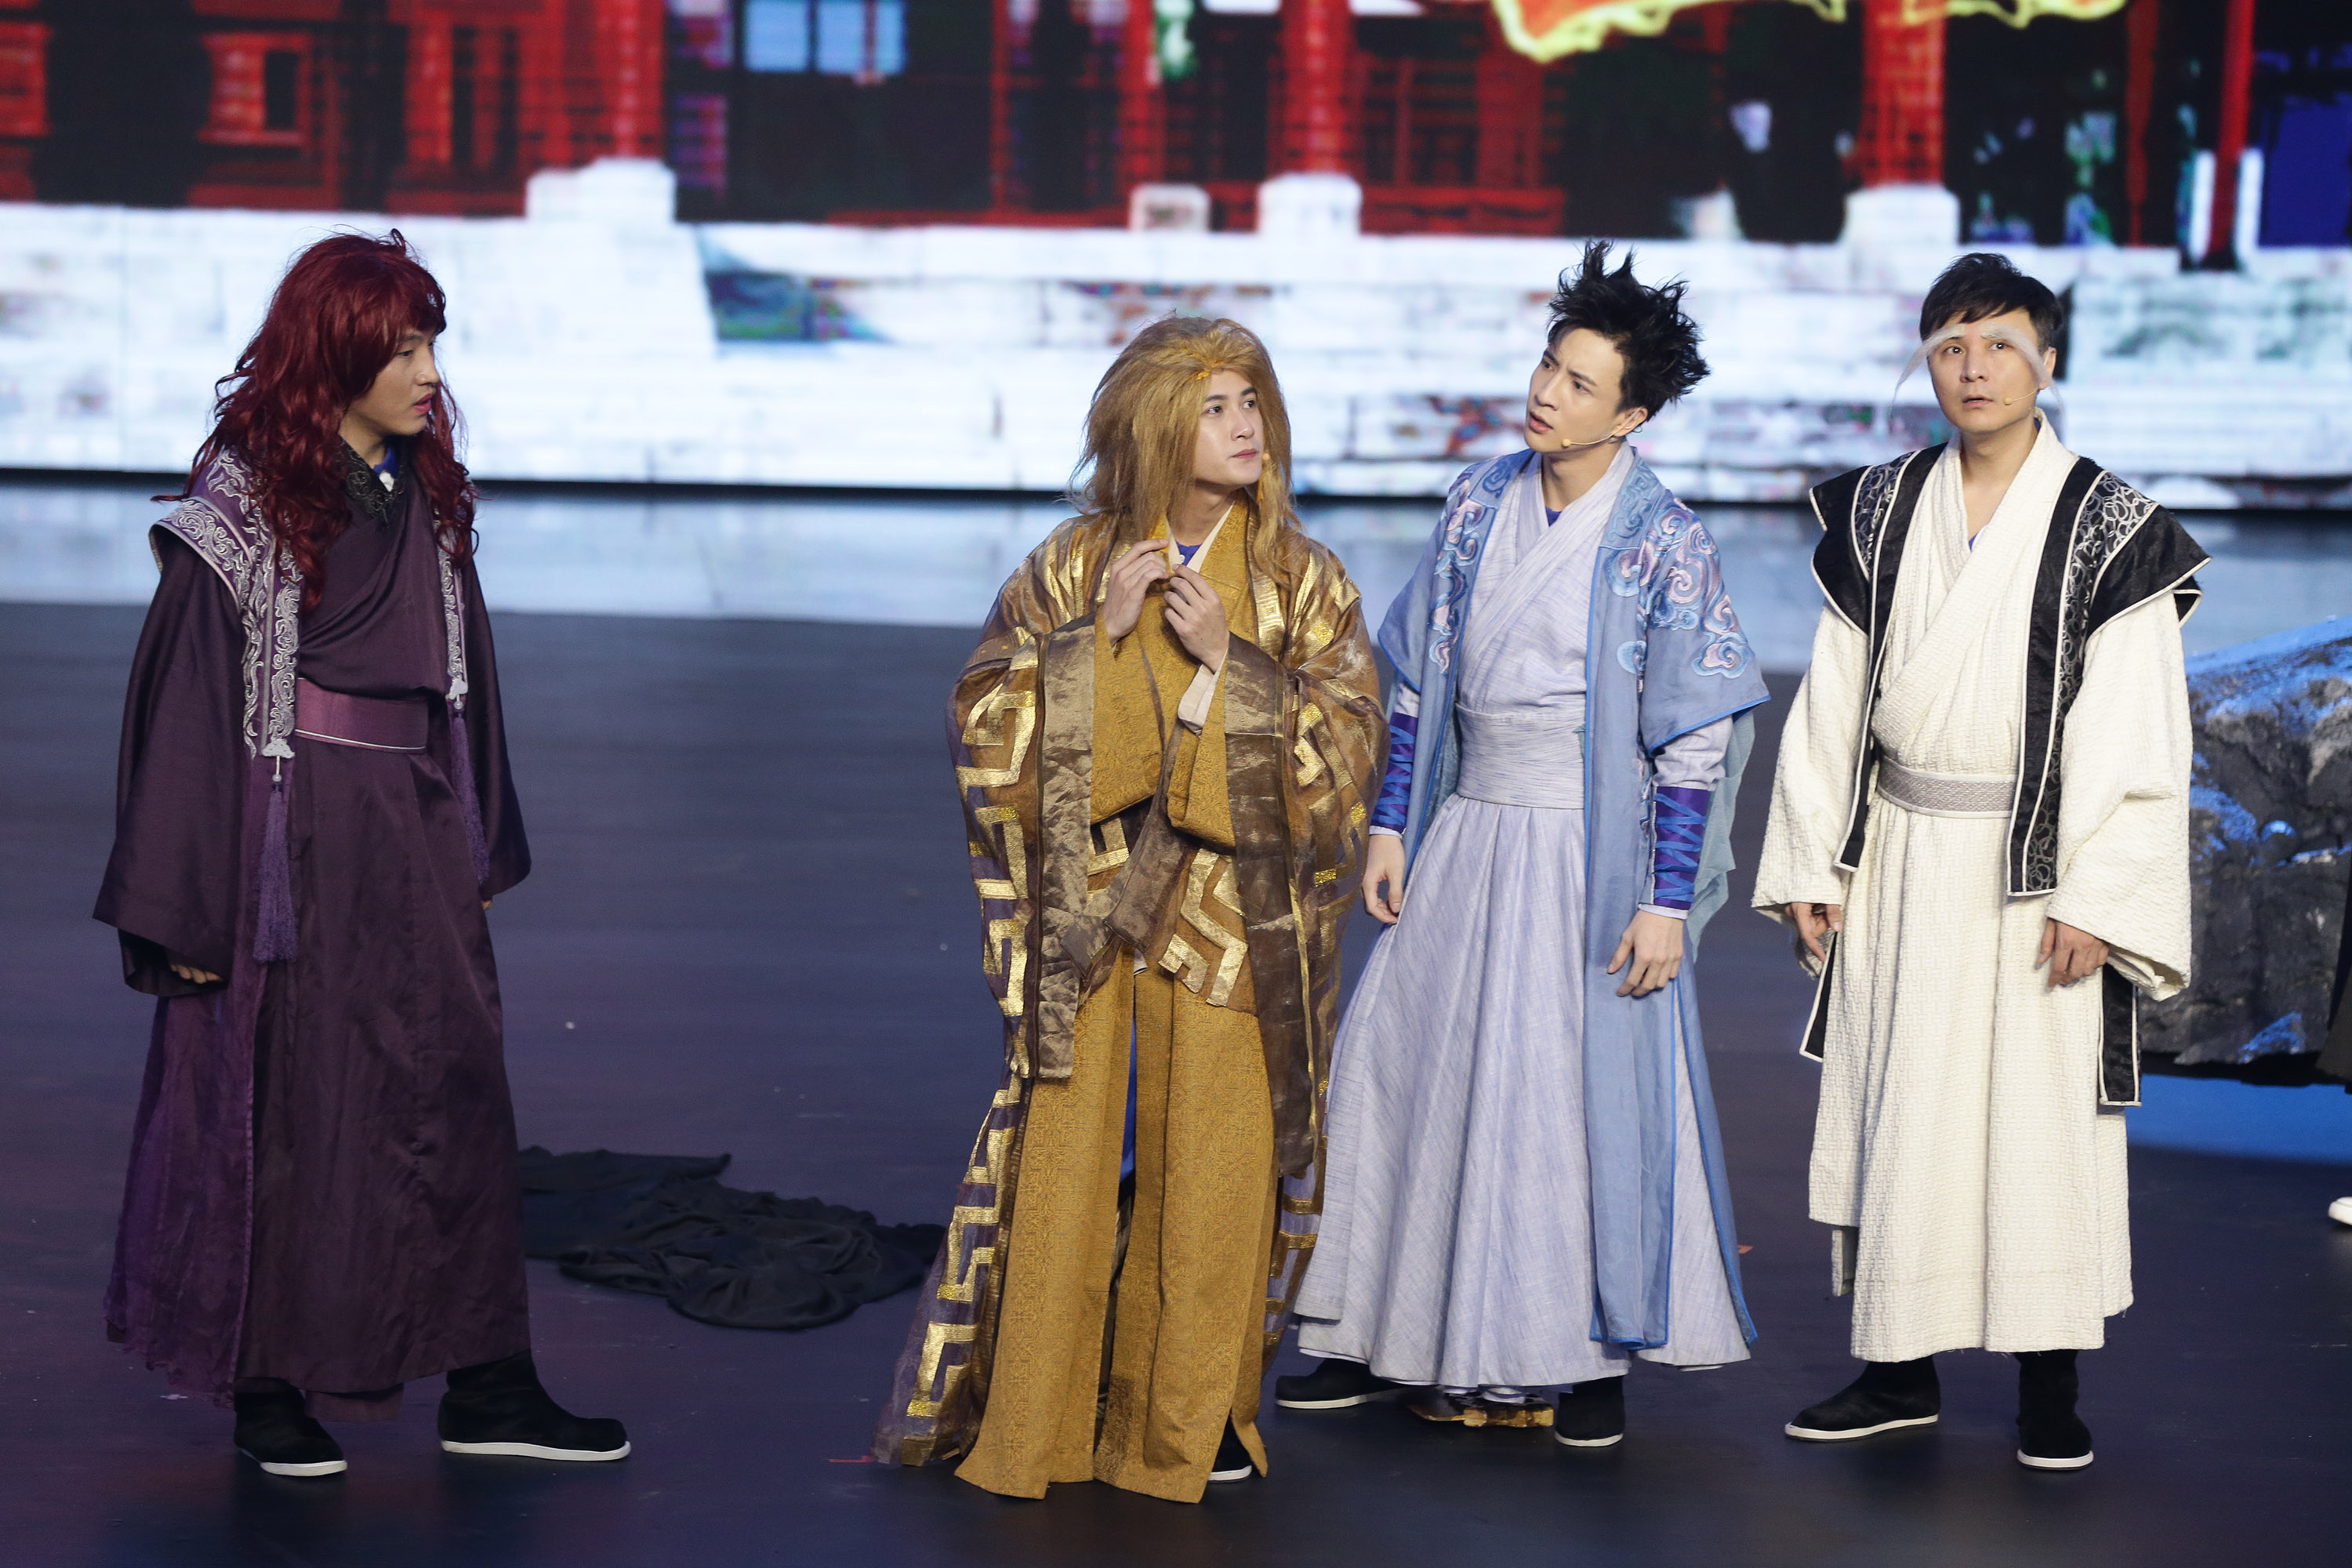 上周六晚,北京卫视《跨界喜剧王》第二季播出了第六期